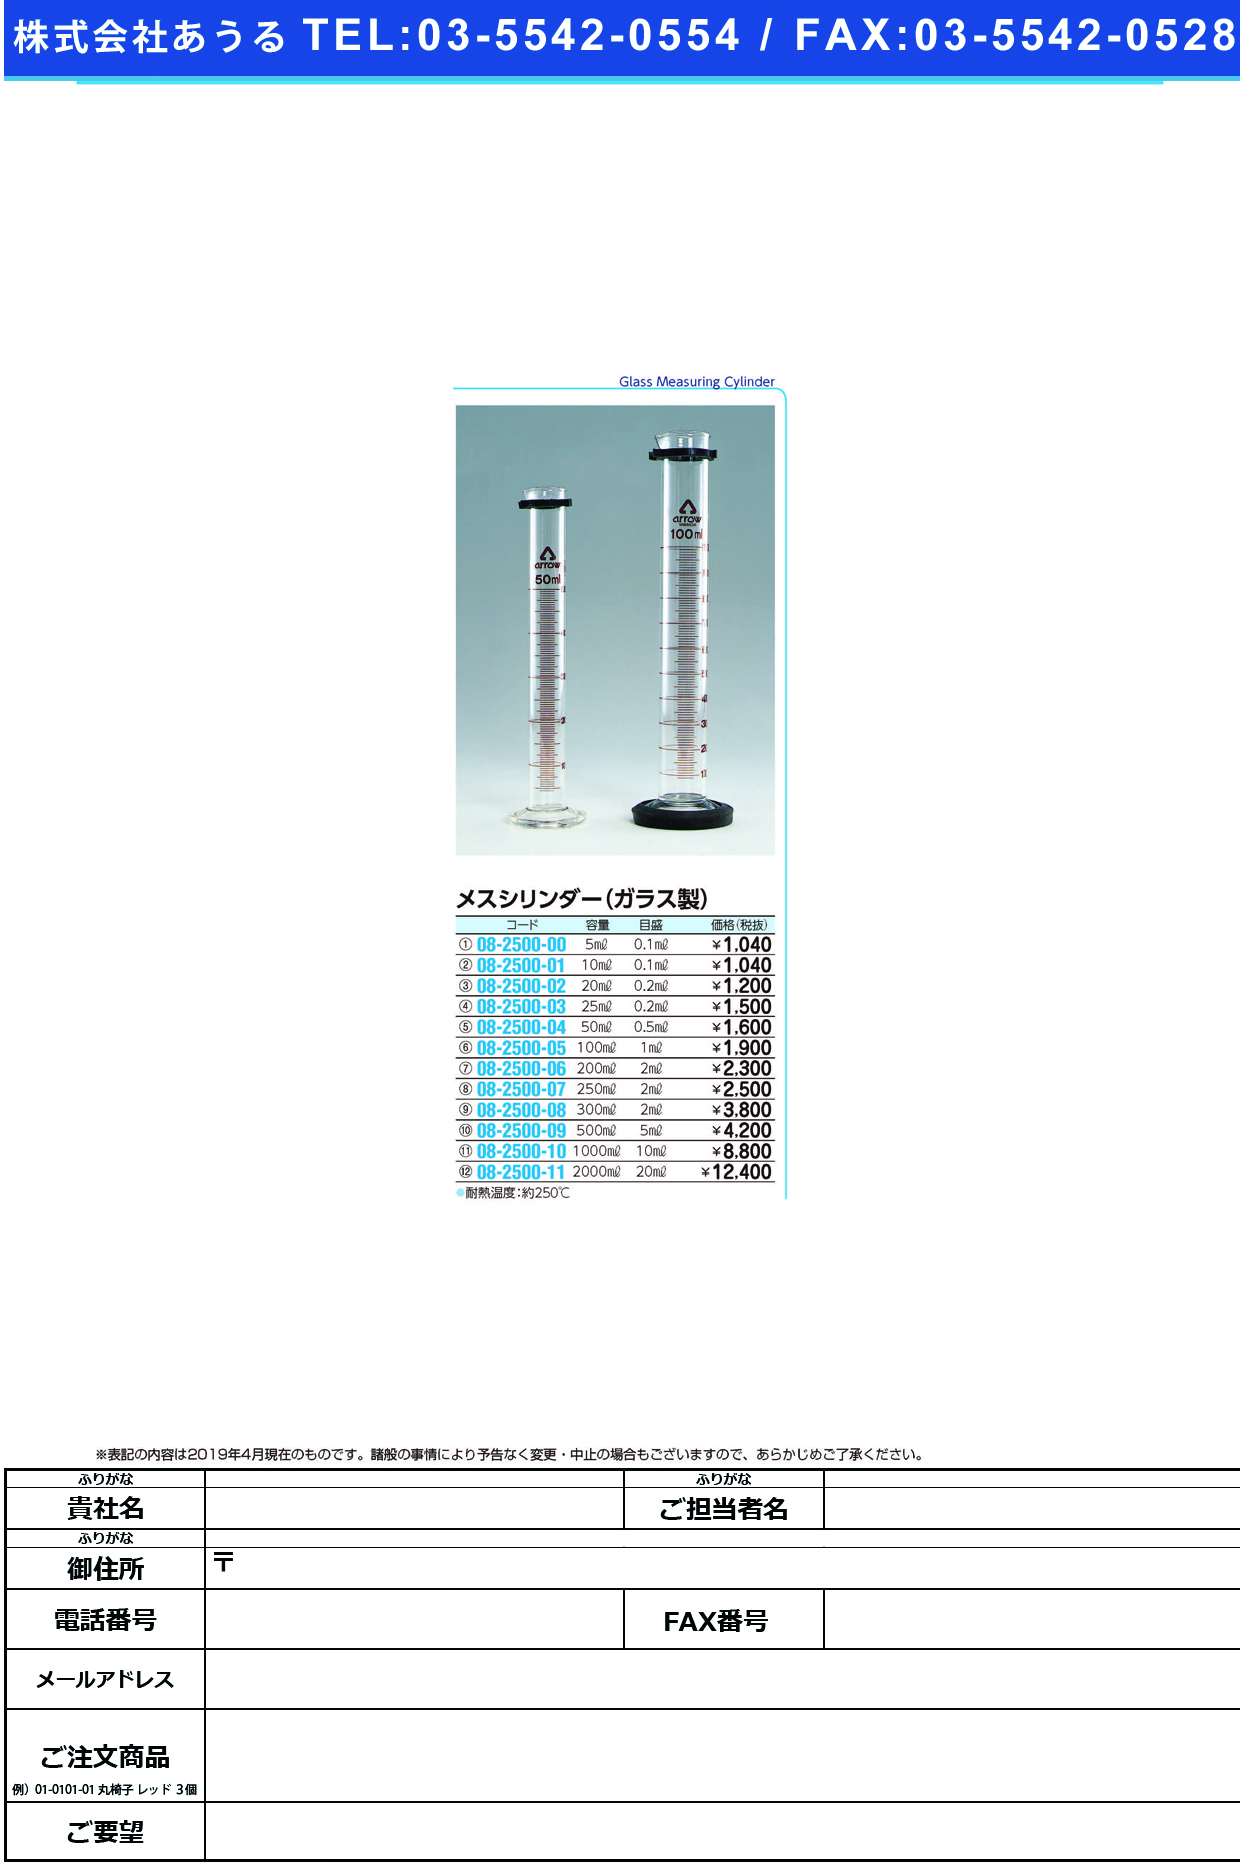 (08-2500-05)メスシリンダー（ガラス製） 100ML ﾒｽｼﾘﾝﾀﾞｰ(ｶﾞﾗｽｾｲ)【1本単位】【2019年カタログ商品】